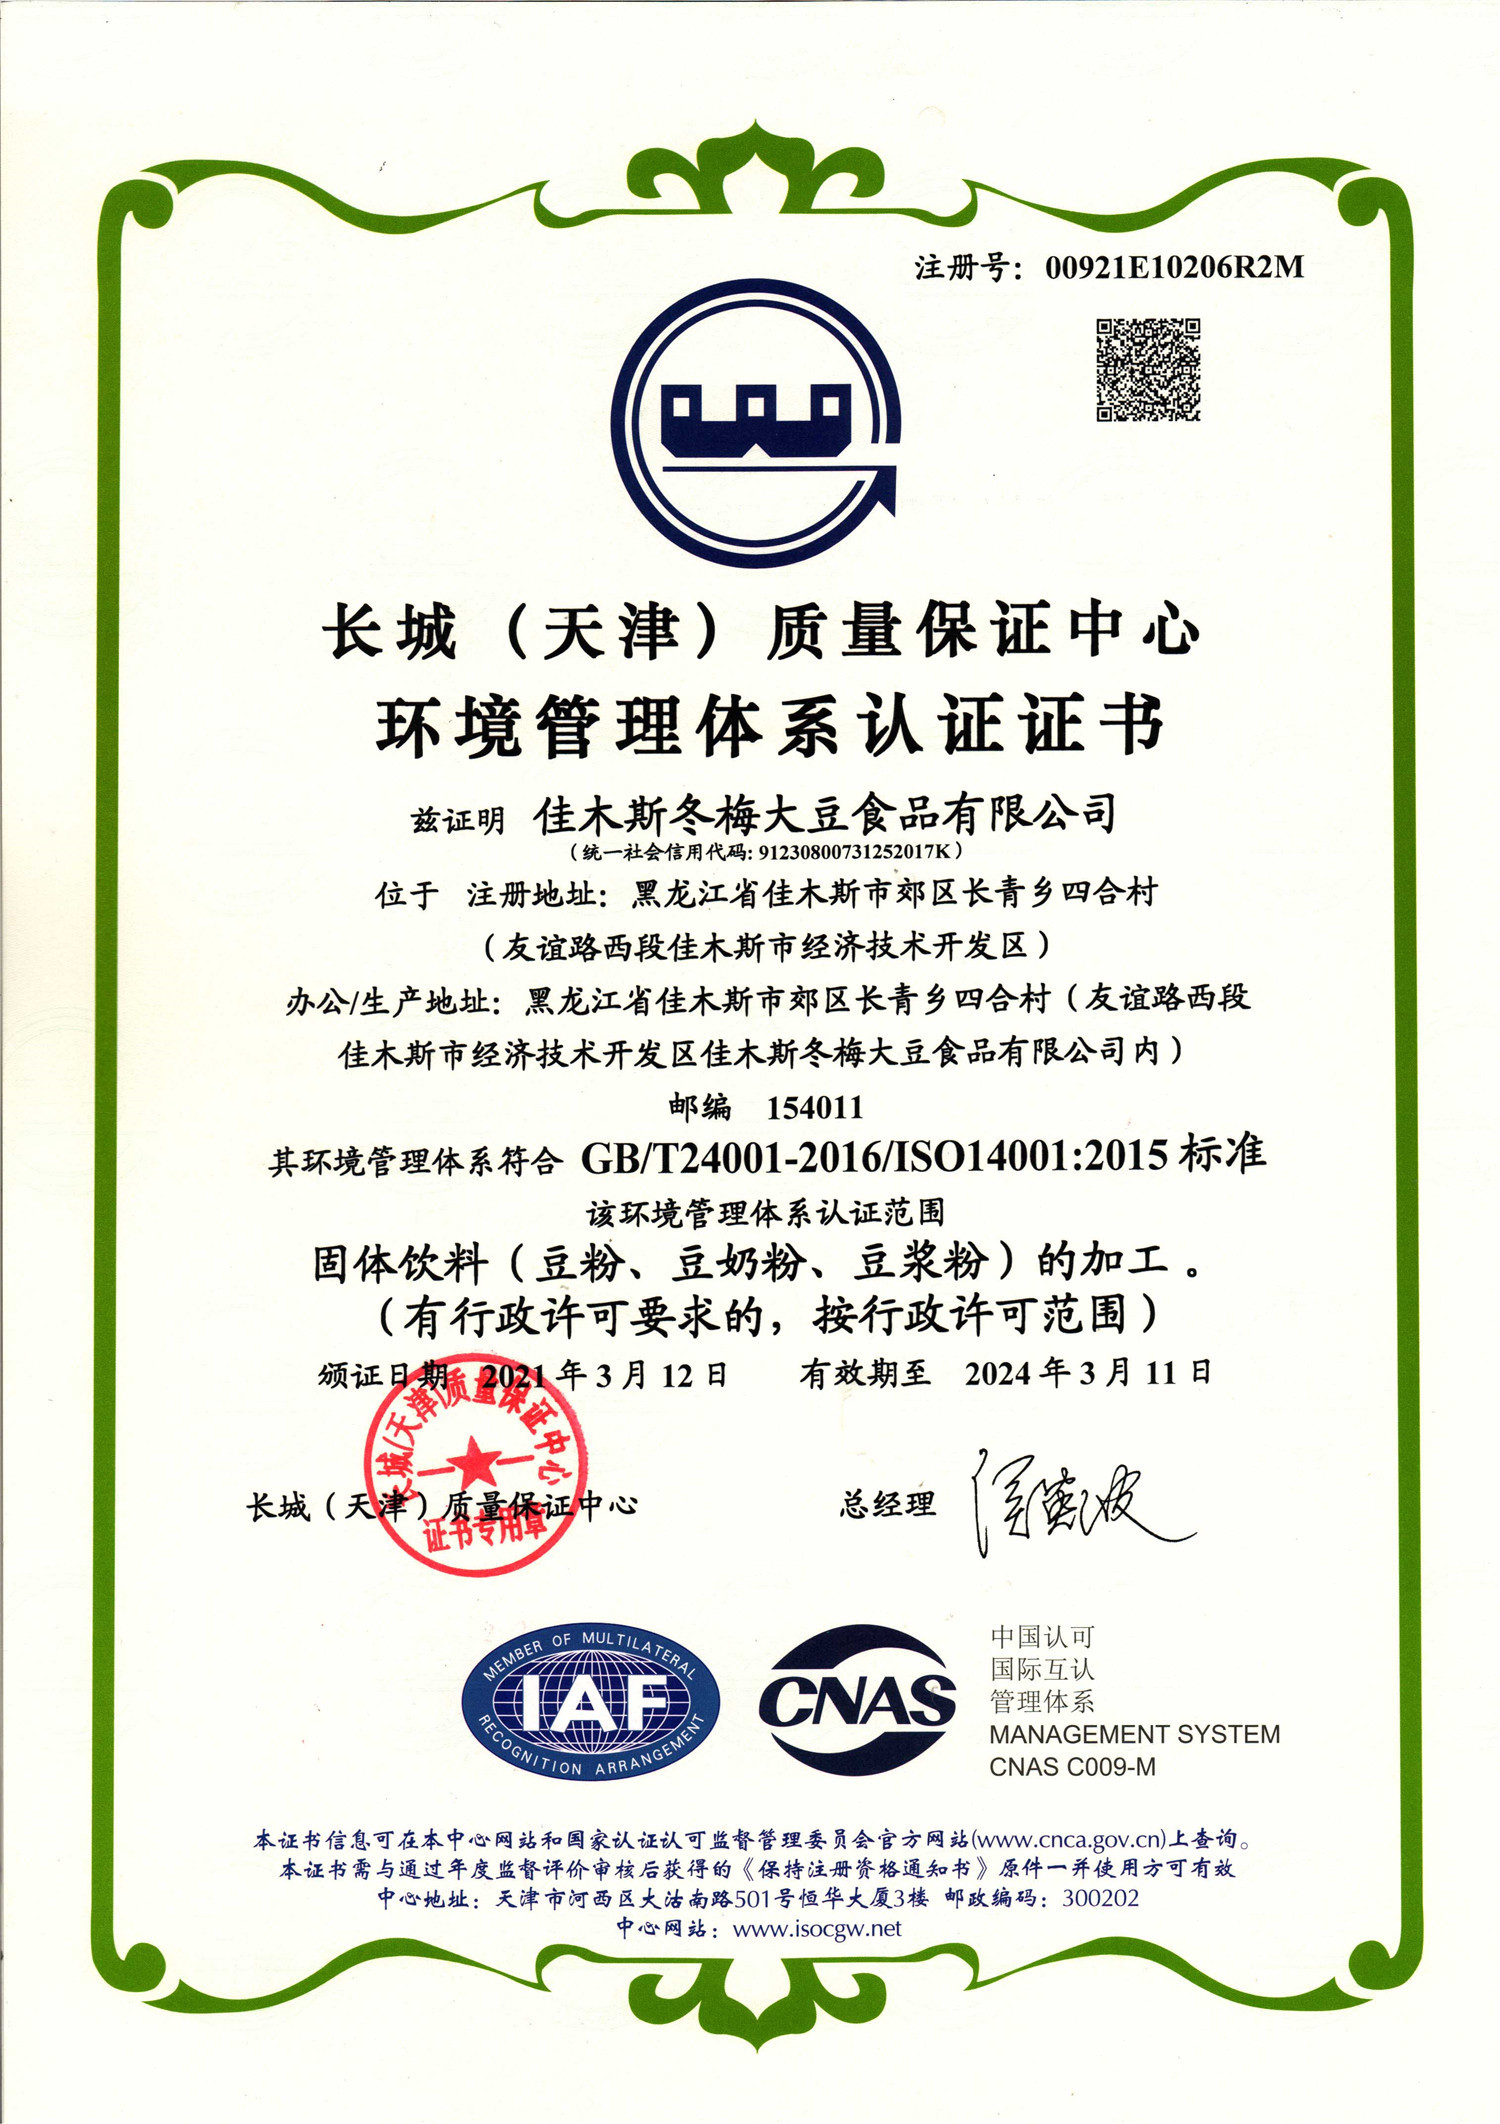 2021 Environmental Certificate